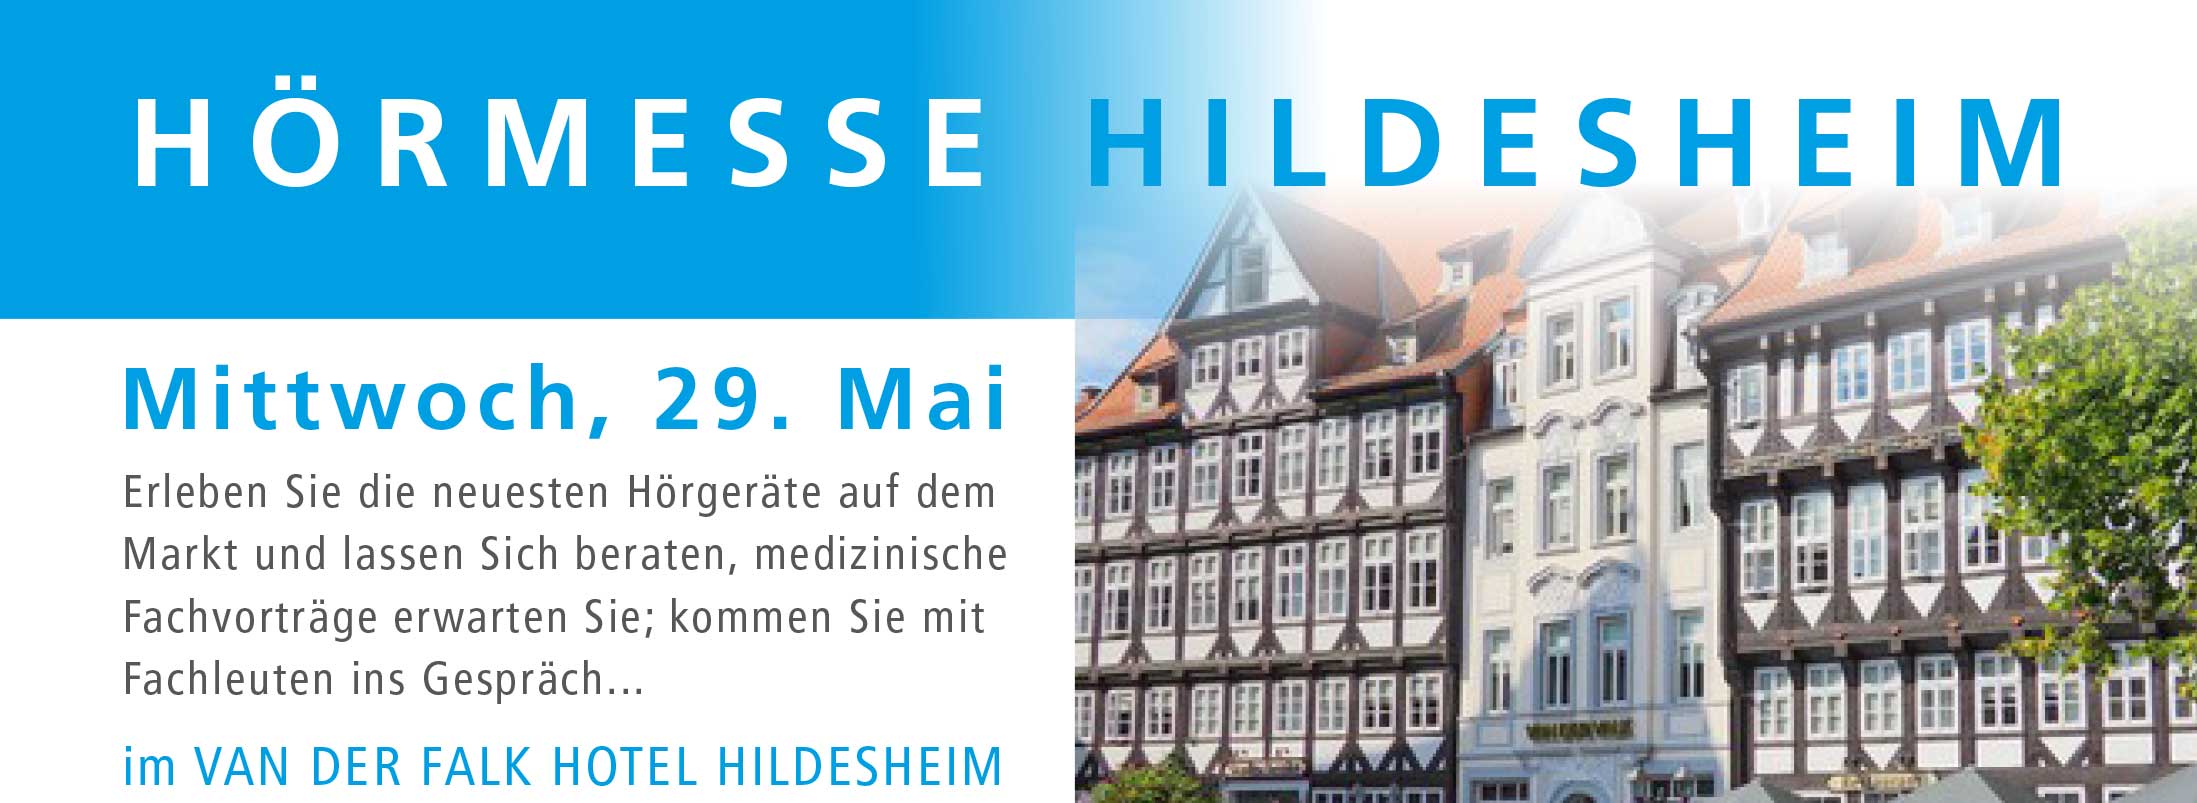 Hörmesse Hildesheim